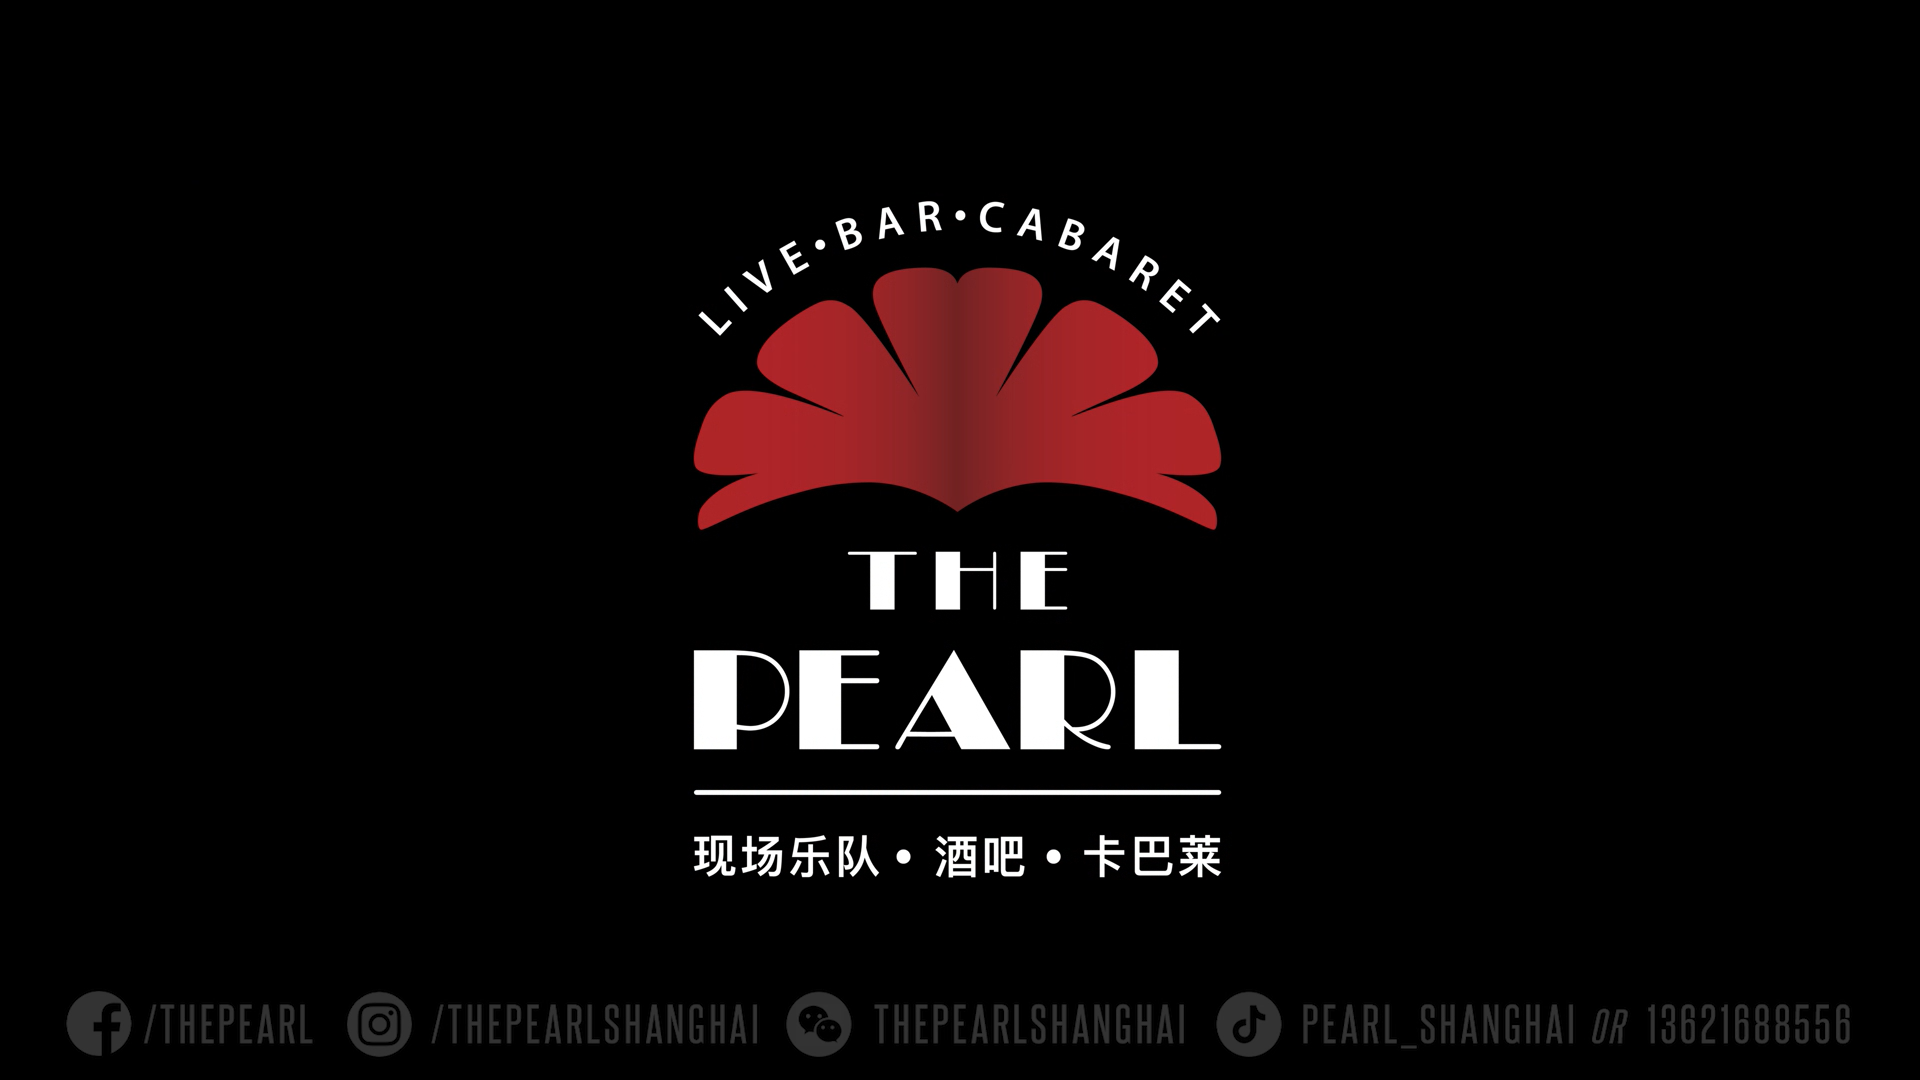 打造中西文化友好交流平台——The pearl 珍珠剧场致力推动中外文化融合发展